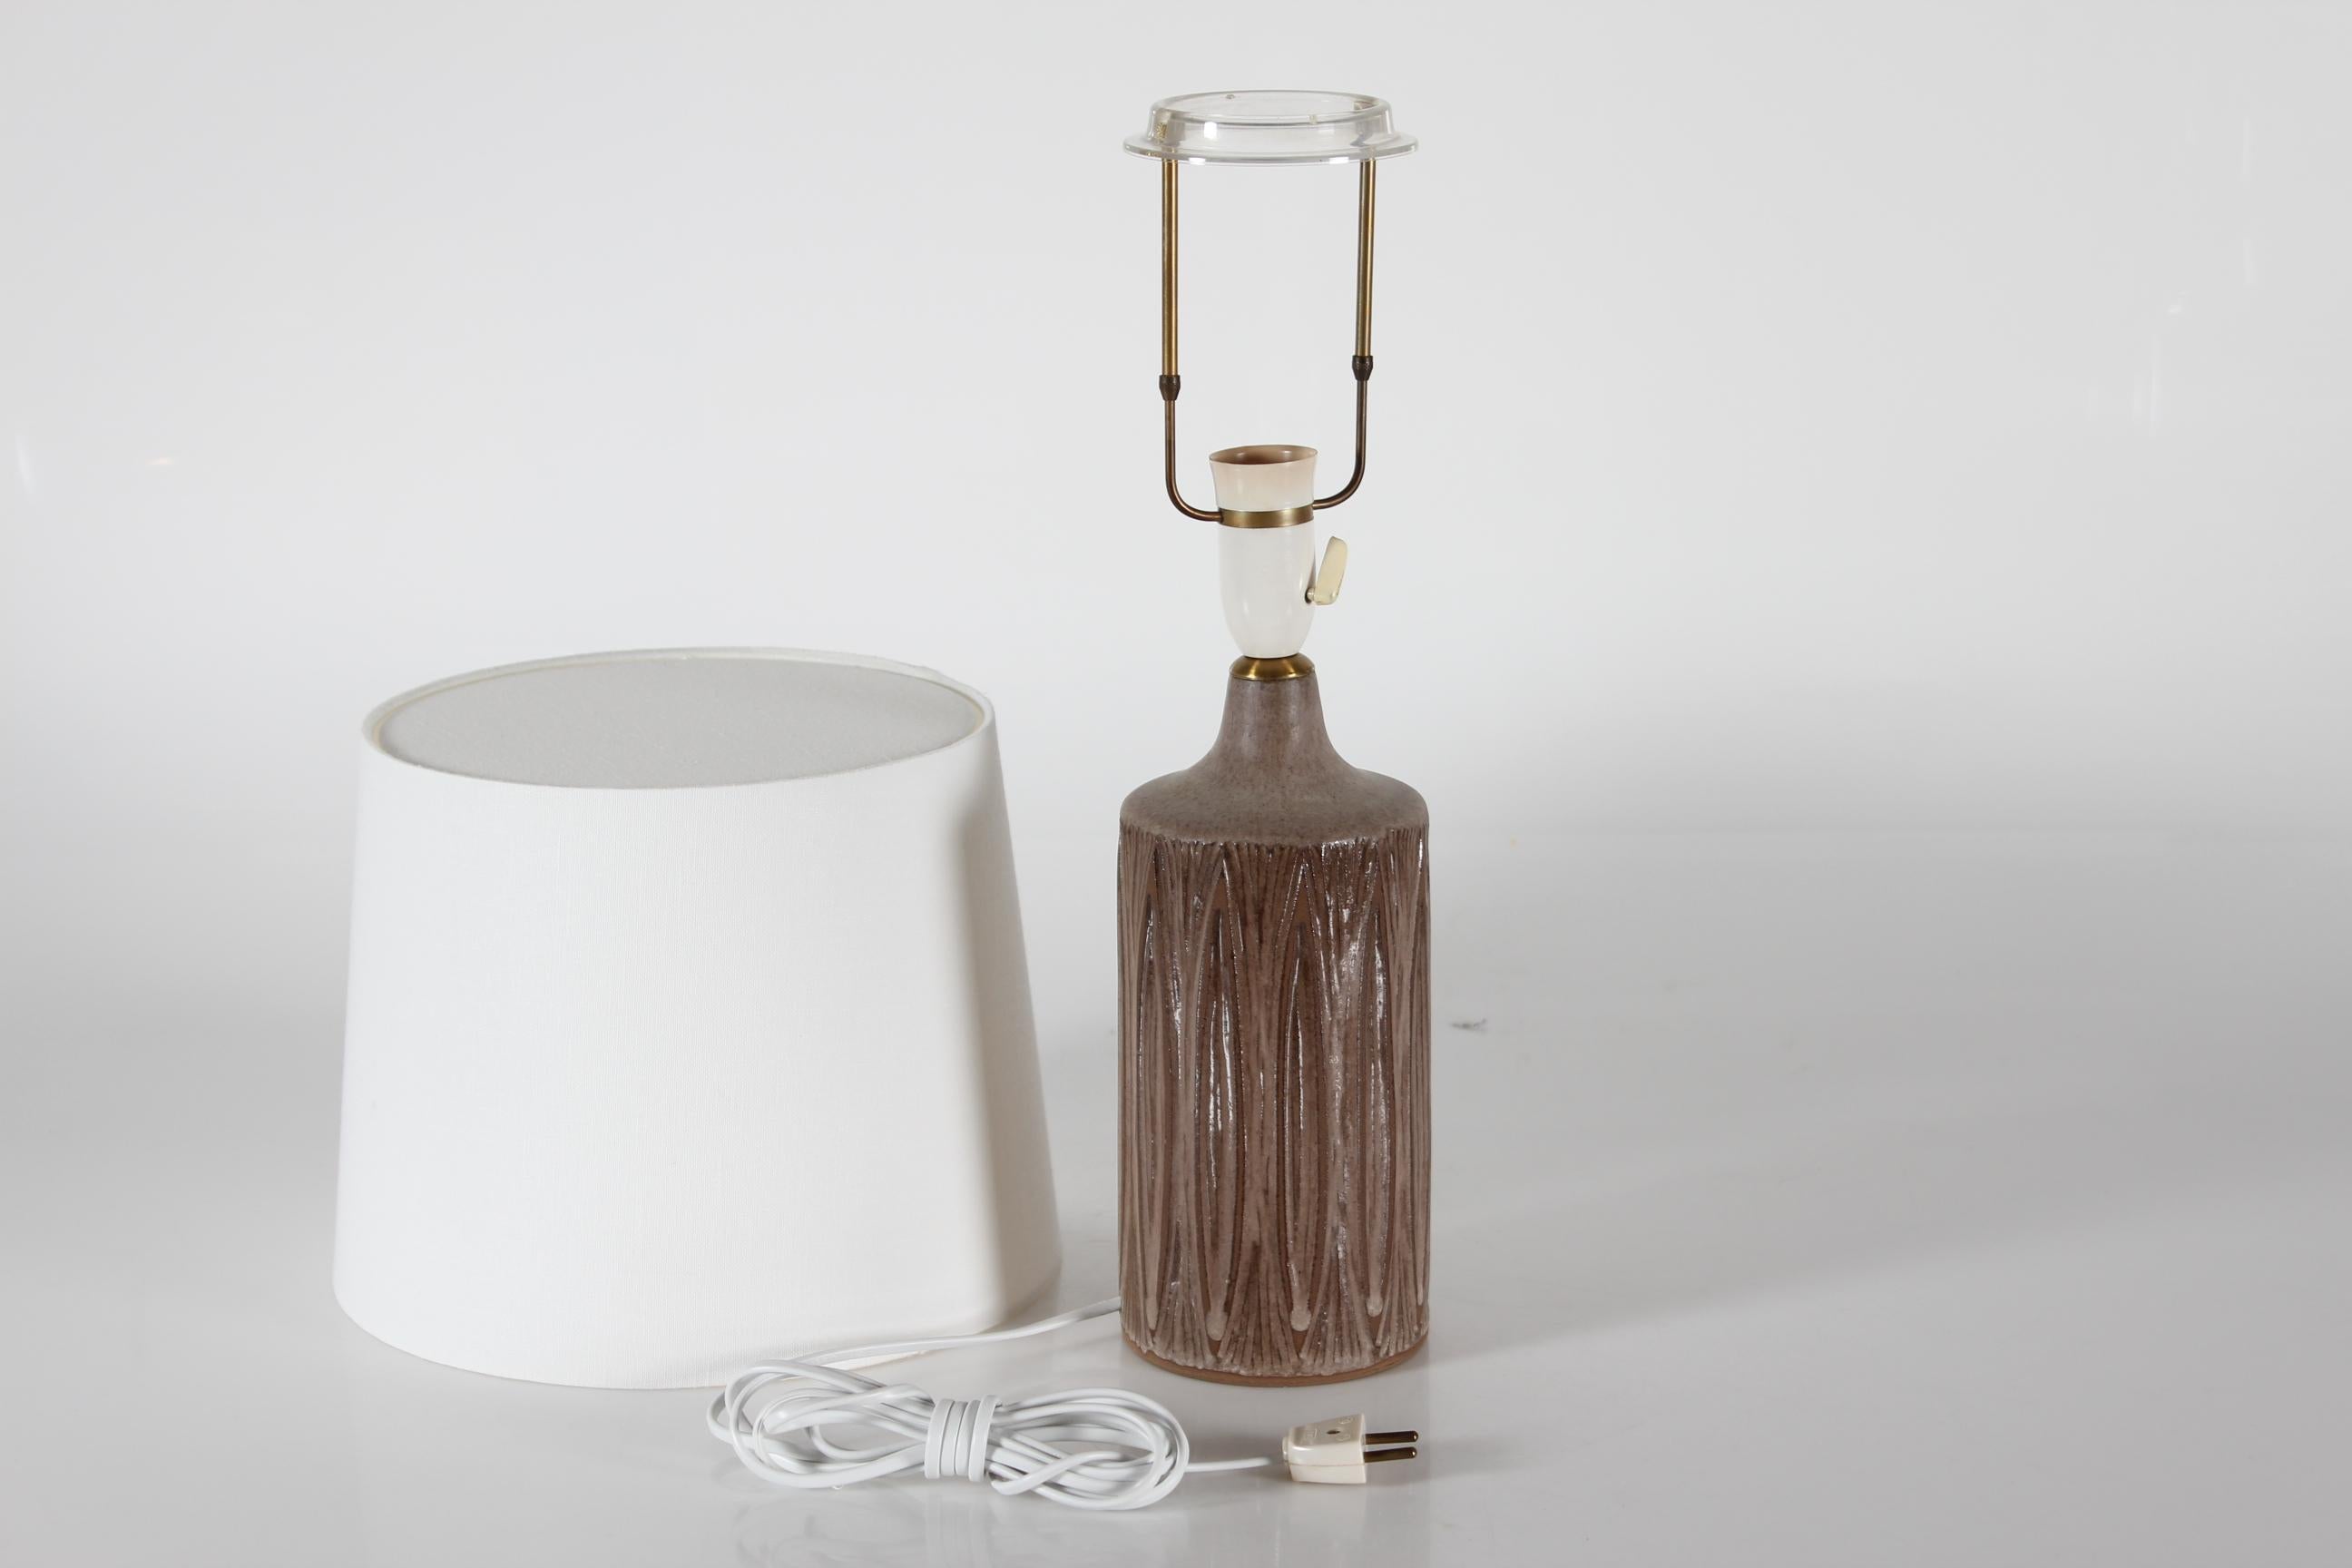 Lampe de table en grès du milieu du siècle, conçue et fabriquée par Einar Johansen dans les années 1960.

La lampe présente un motif cannelé incisé à la main en lignes verticales.
La glaçure brune claire et brillante, de couleur terre ou chocolat au